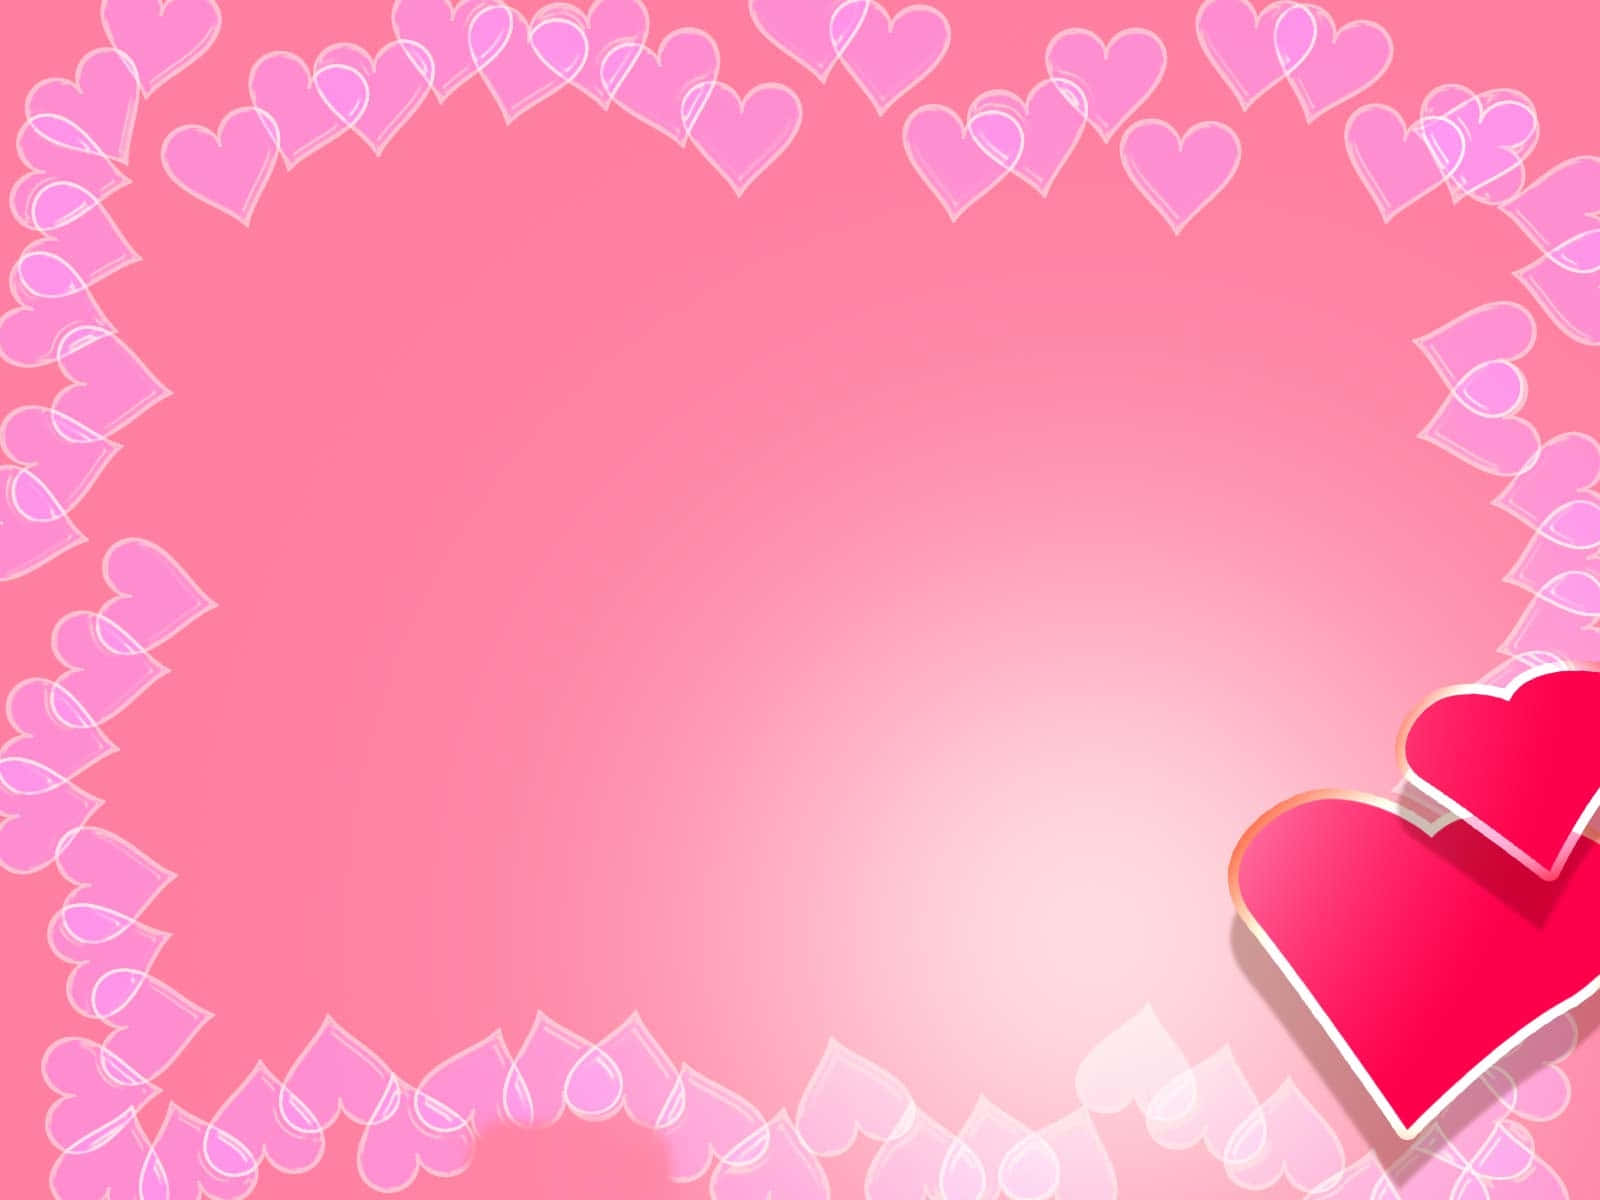 Free Pink Valentine Day Wallpaper Downloads, [100+] Pink Valentine Day  Wallpapers for FREE 